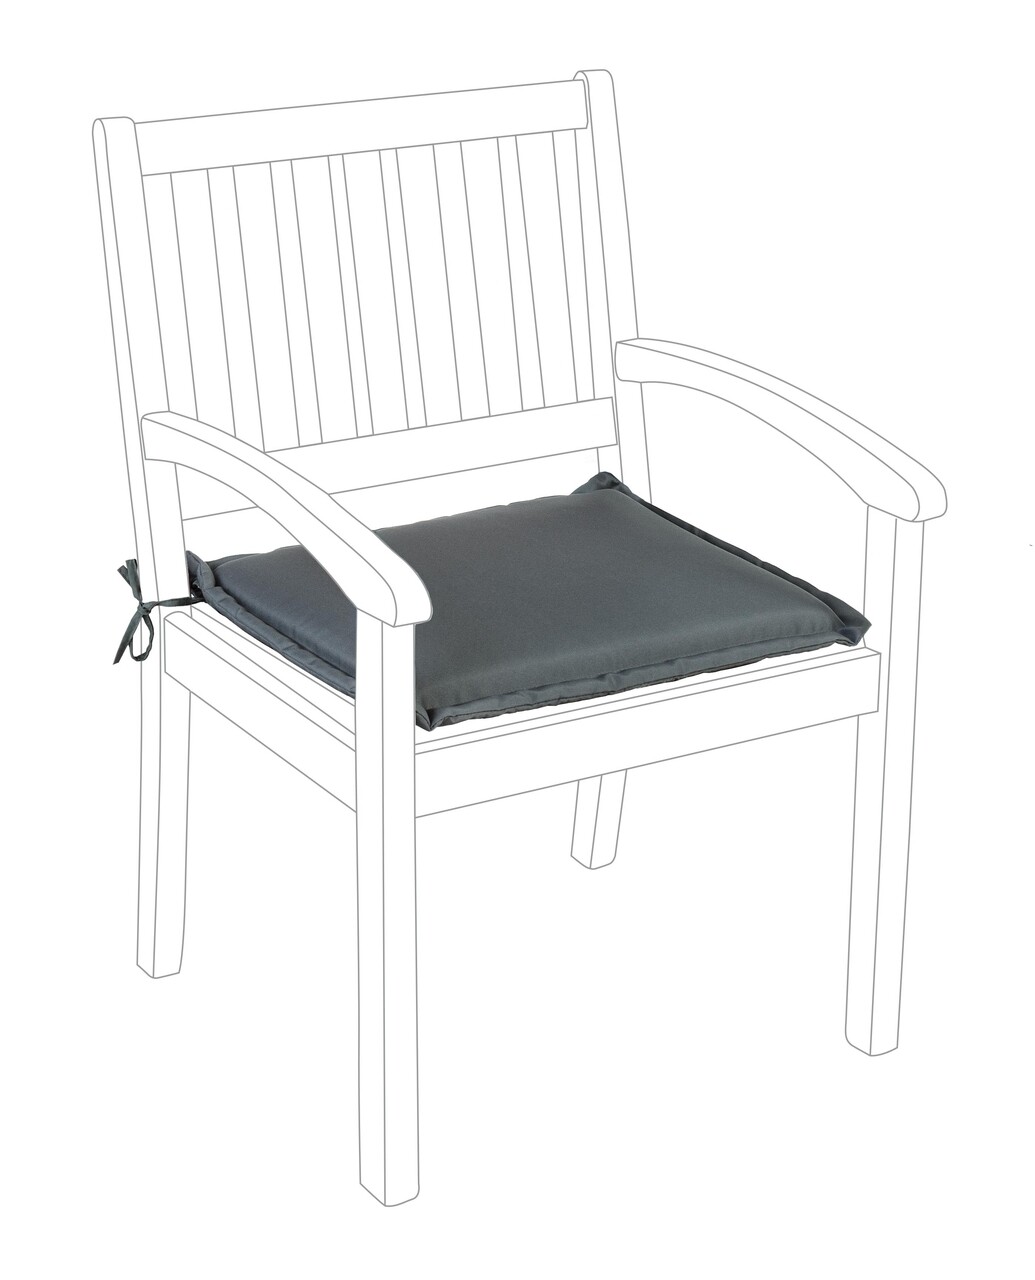 Poly180 Párna kerti székhez, Bizzotto, 49 x 52 cm, vízhatlan poliészter, antracitszürke